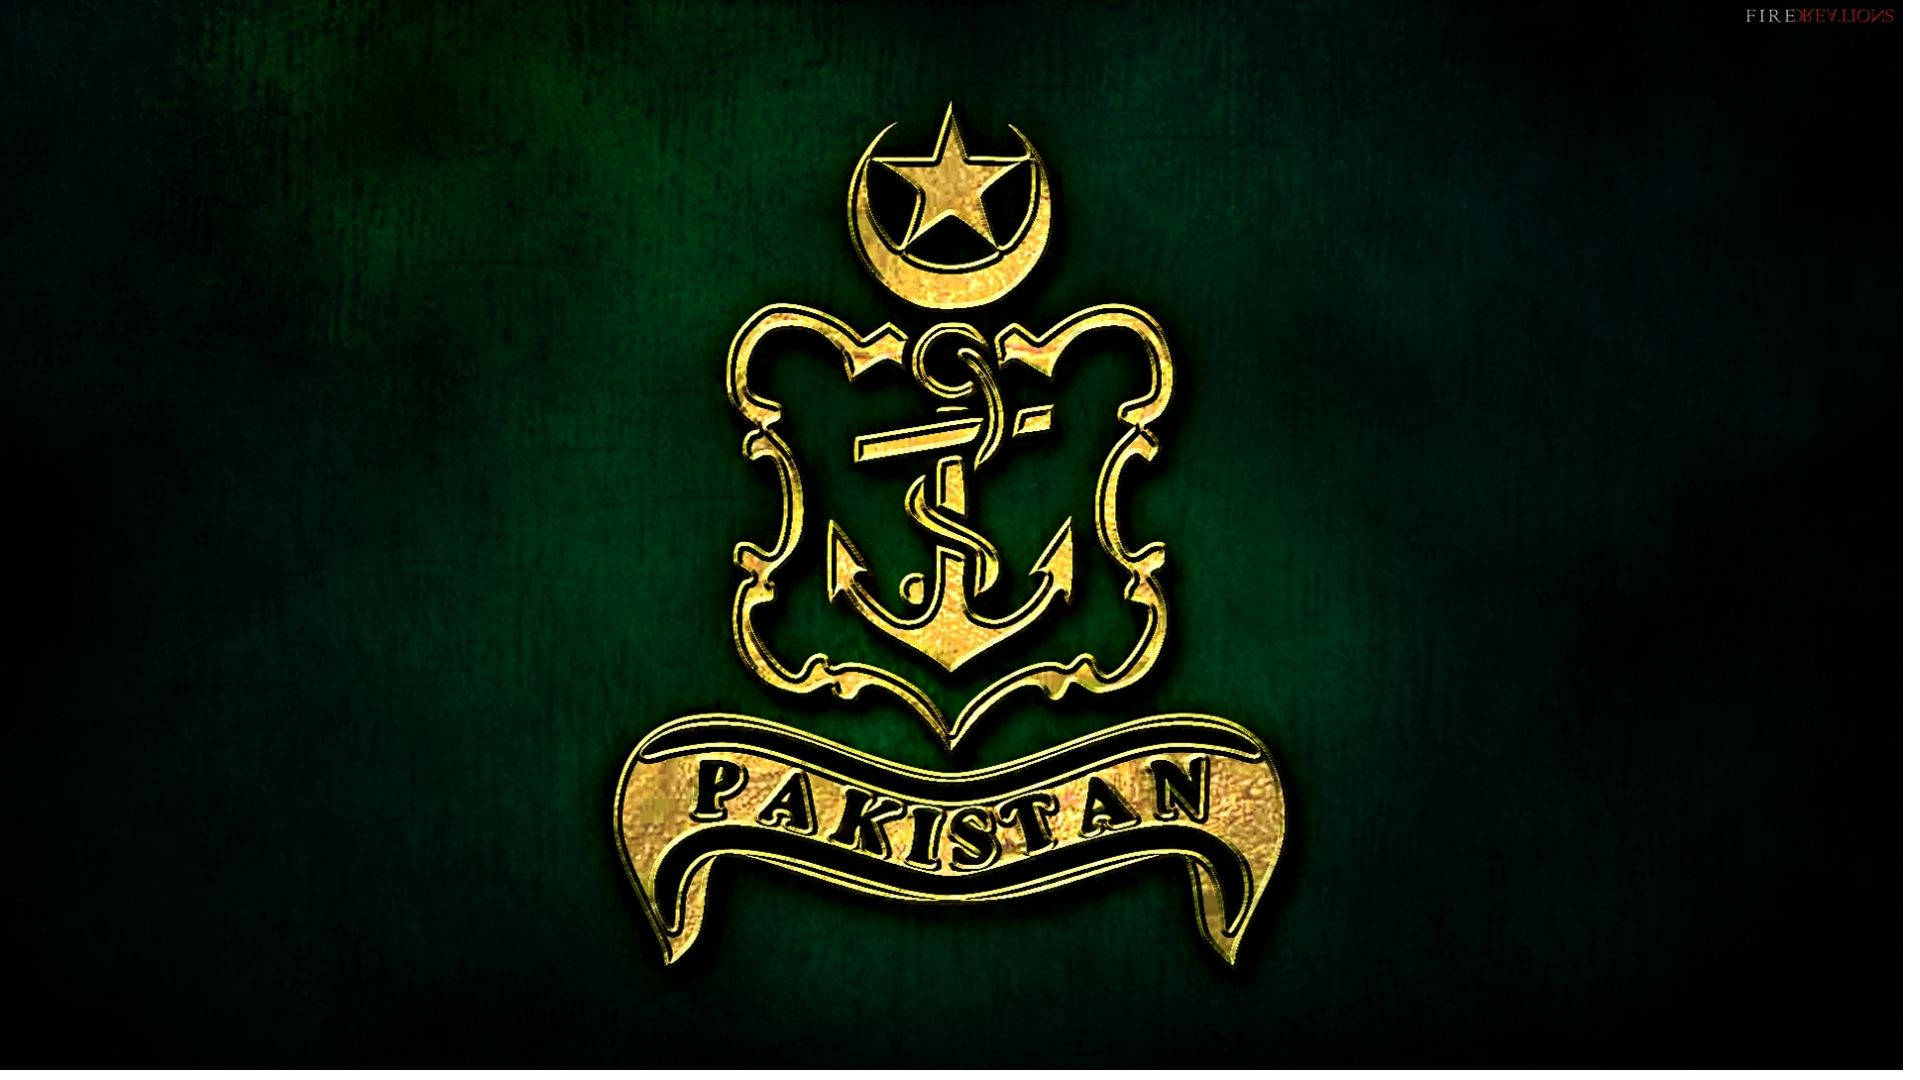 1920x1080 Download Pakistan Army Logo Wallpaper